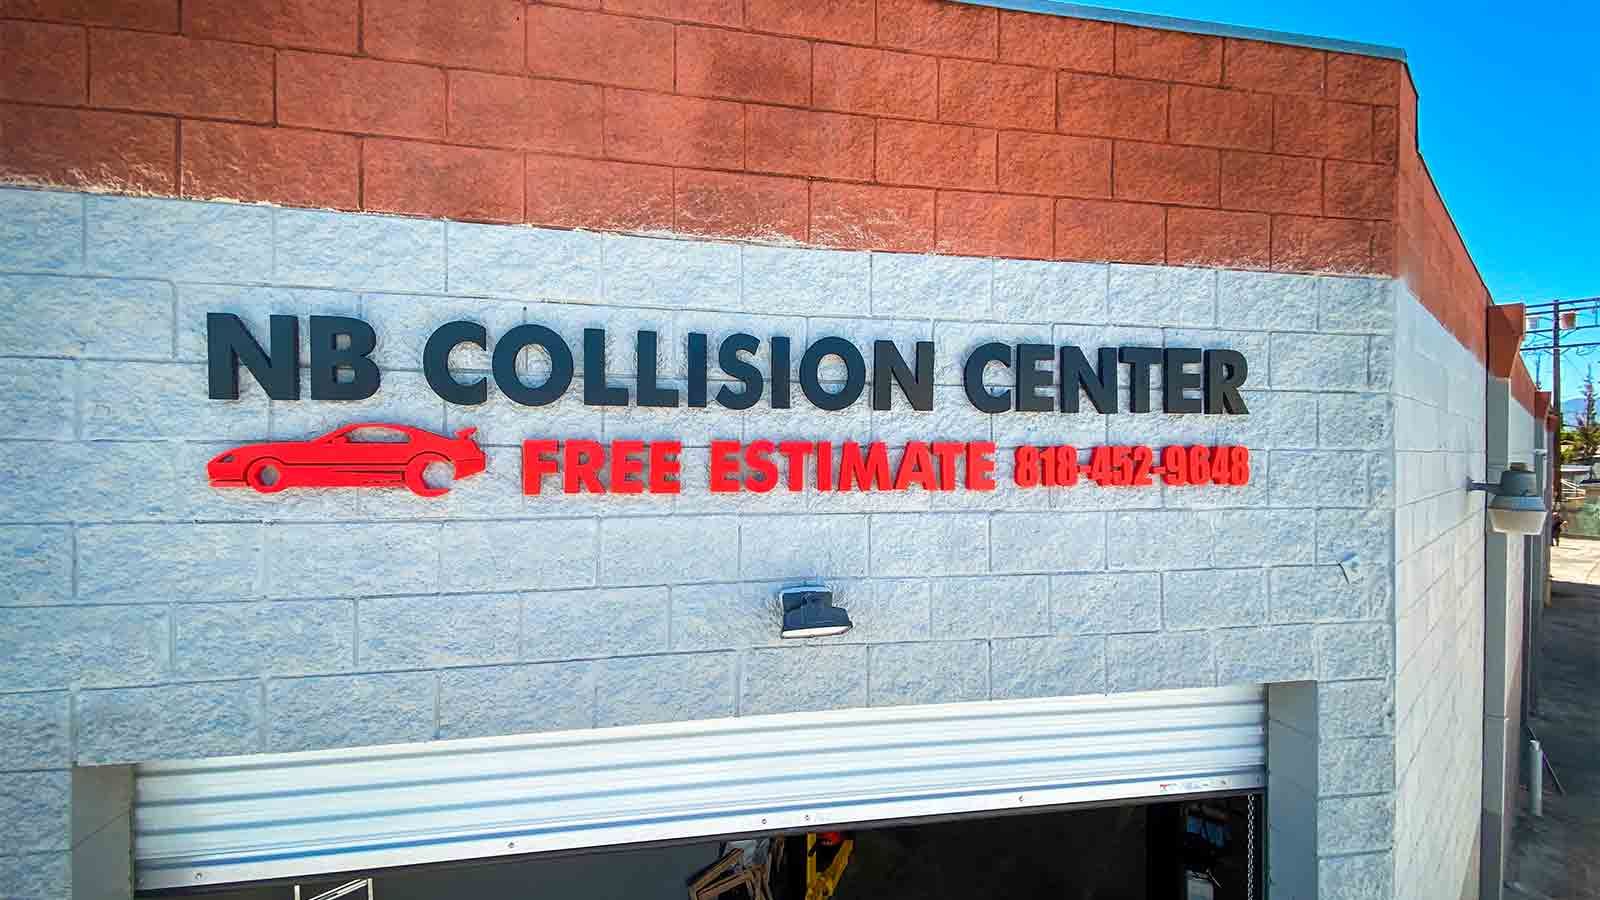 nb collision center pvc 3d letters